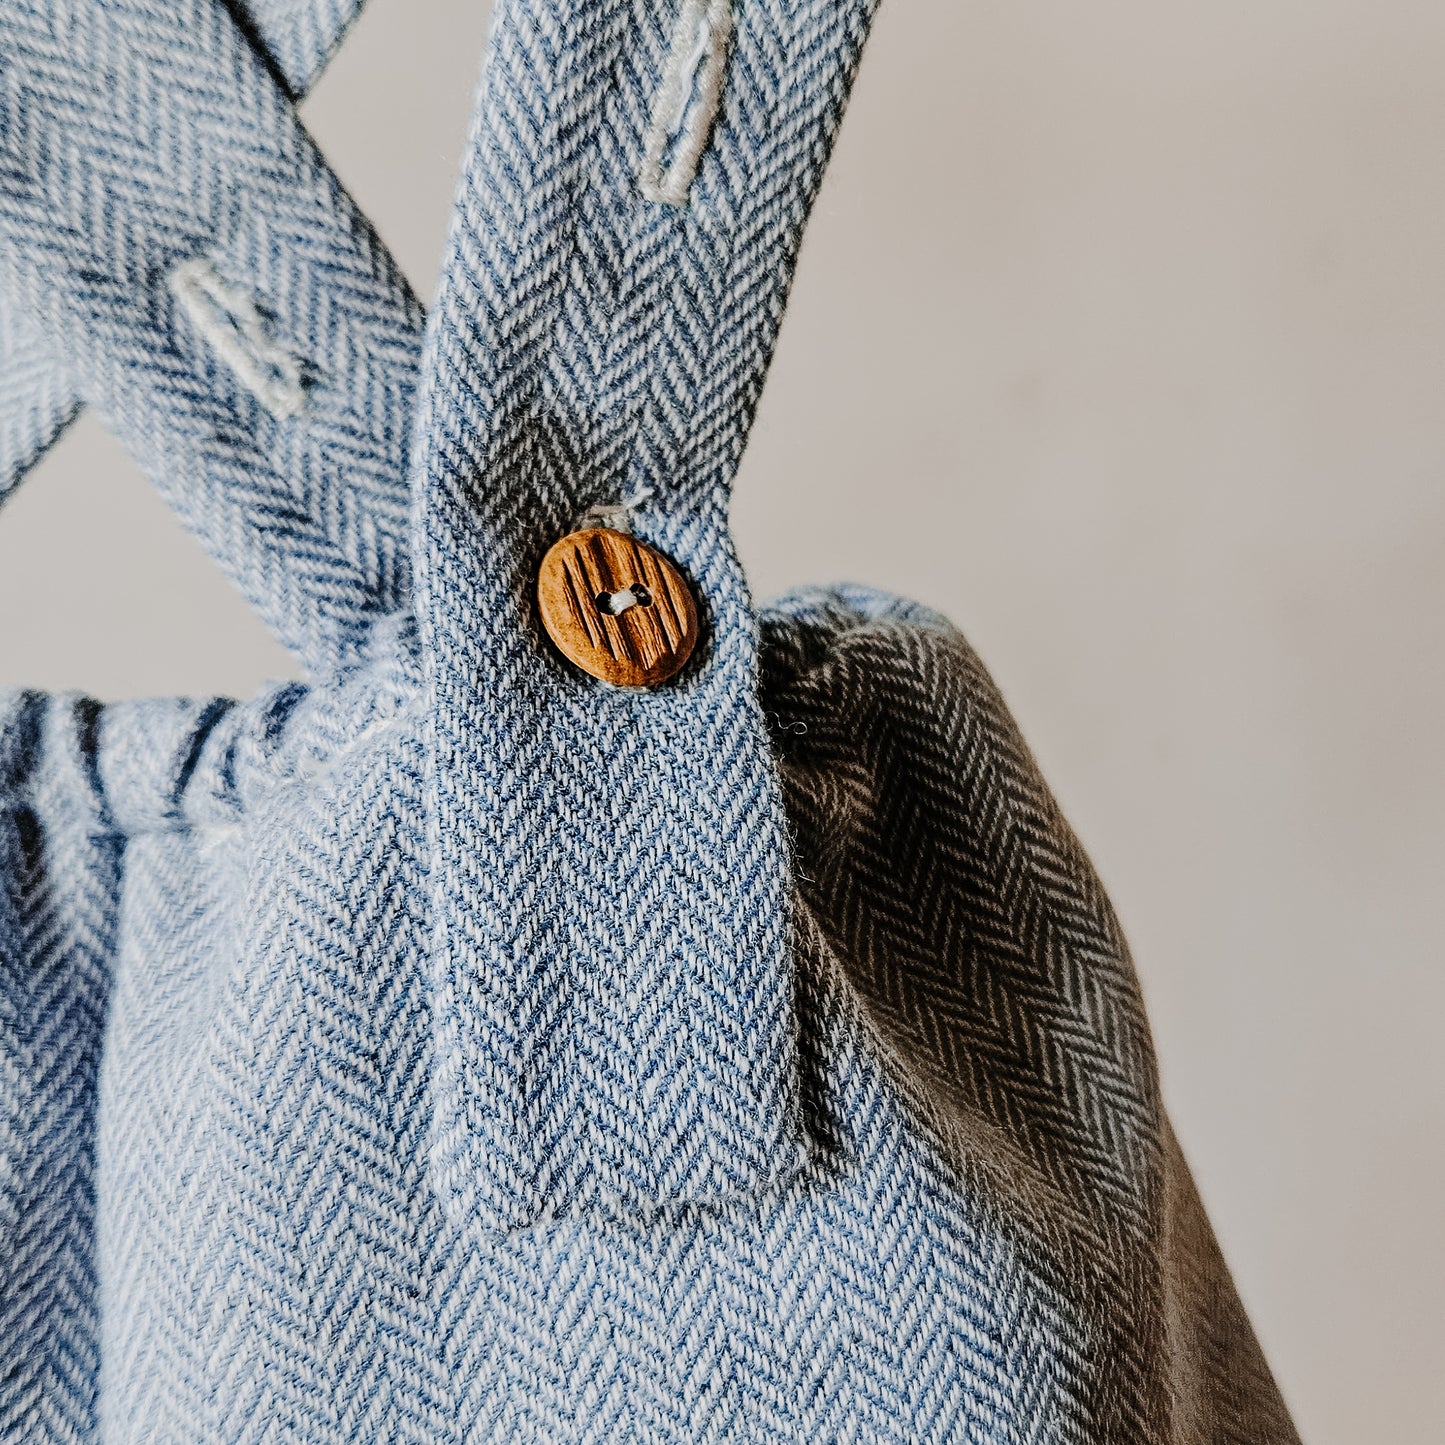 Mode enfantine bloomer à bretelles ajustables avec boutons imitation bois coton et laine chevrons bleu porcelaine style retro chic